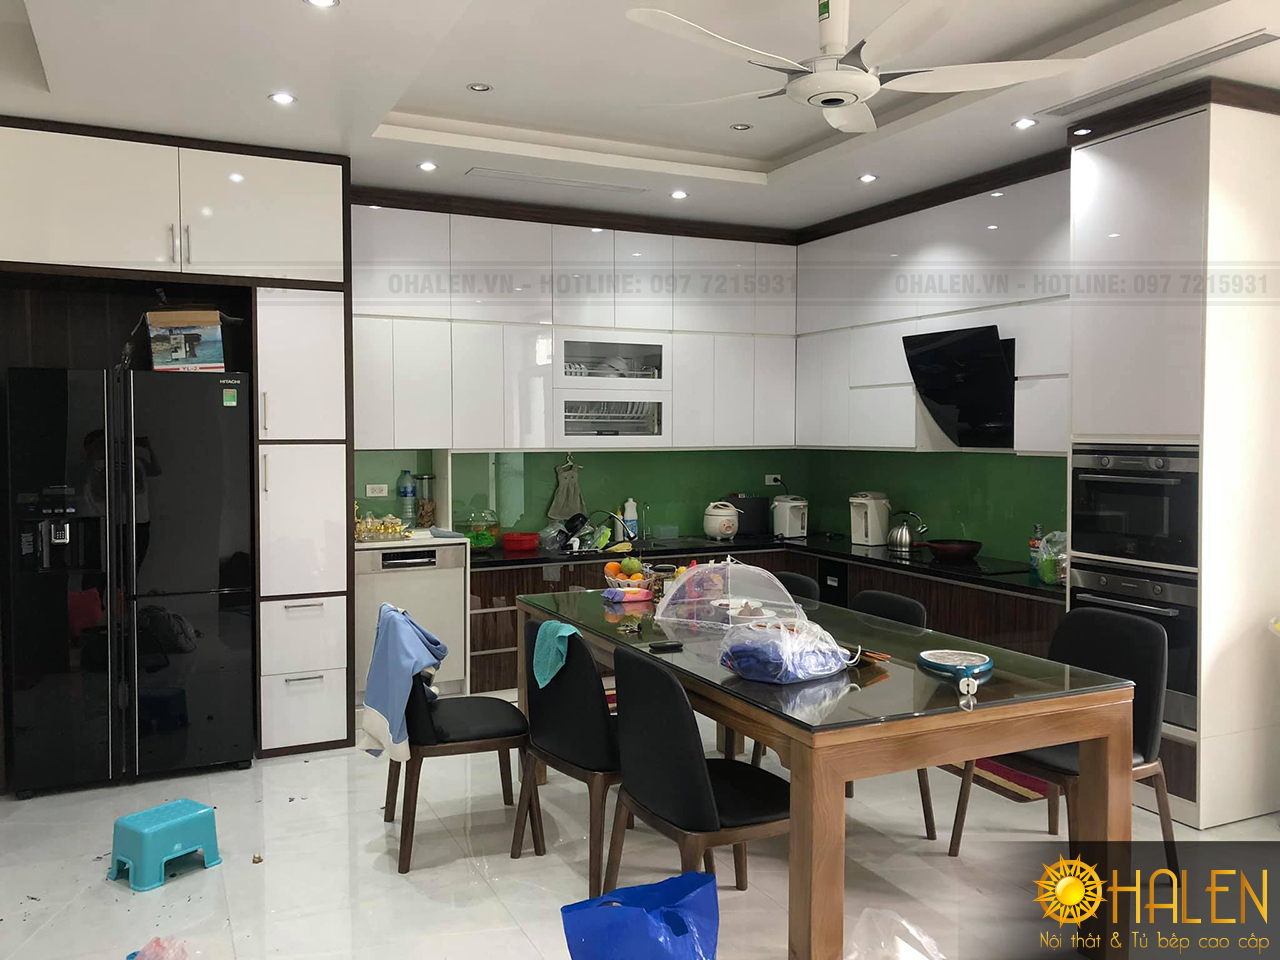 Tủ bếp kịch trần cho không gian bếp gđ anh Tuân - Vĩnh Phúc